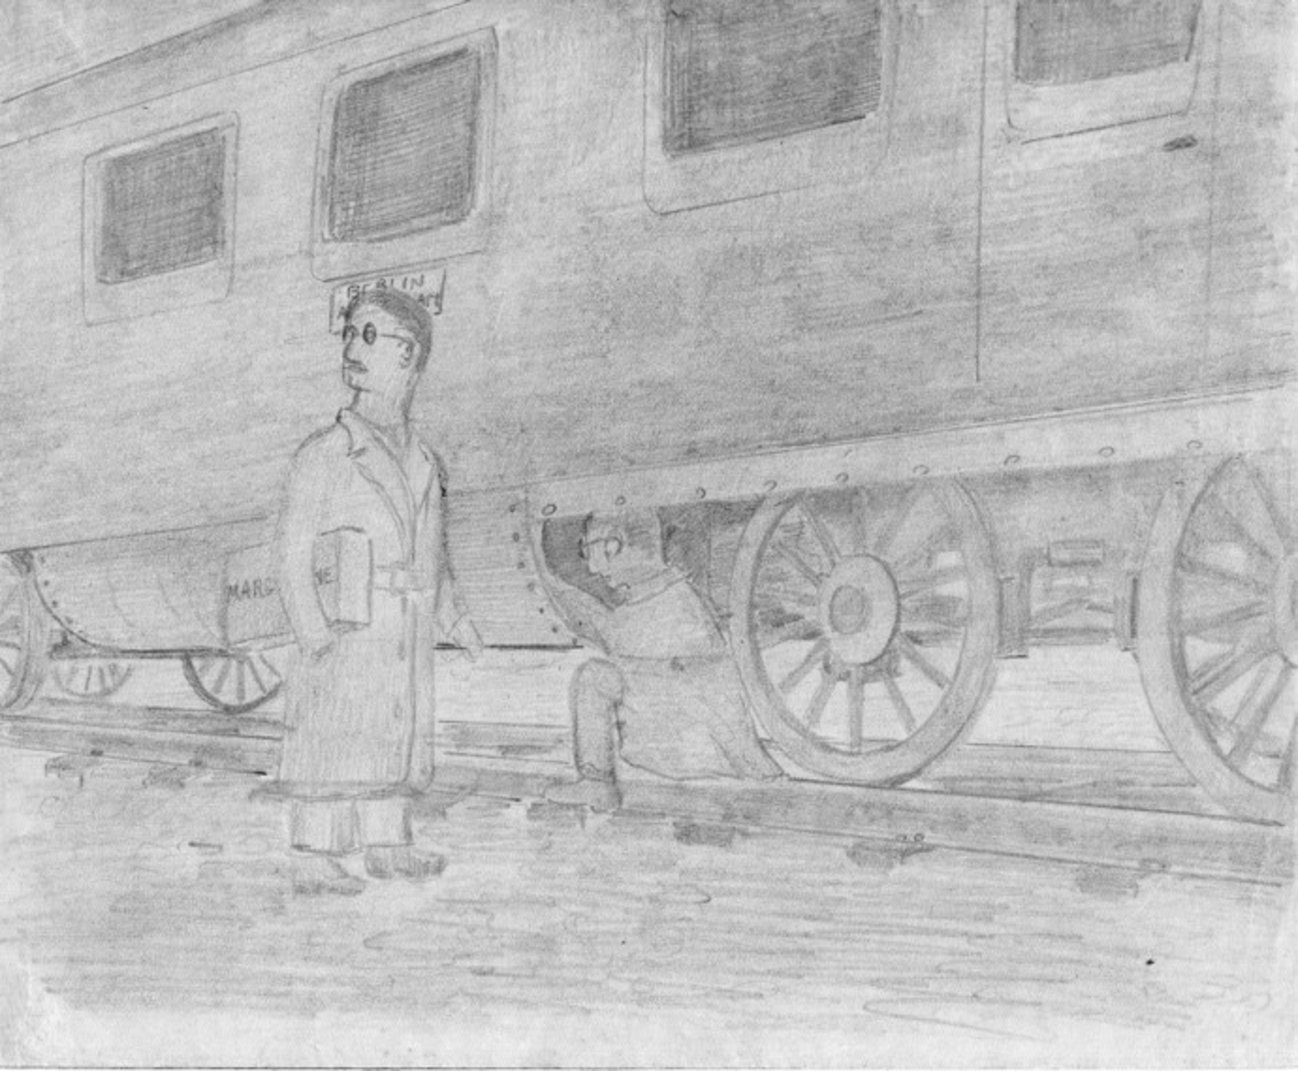 Zeichnung der Flucht von Coenraad Liebrecht Temminck-Groll, undatiert. Dokumentationszentrum NS-Zwangsarbeit